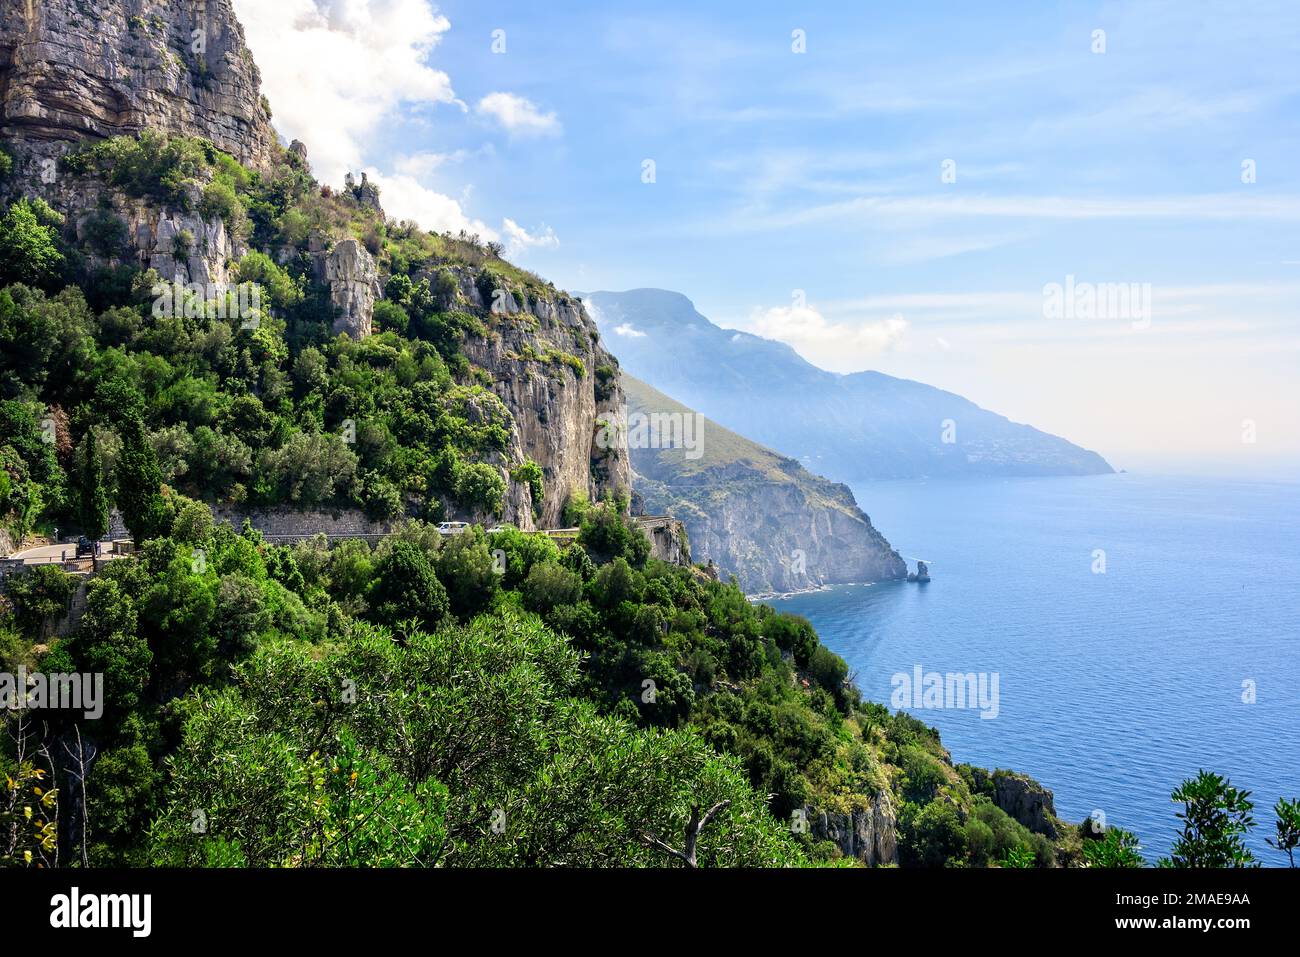 Montagnes pittoresques et mer bleue sur la côte amalfitaine en Italie Banque D'Images